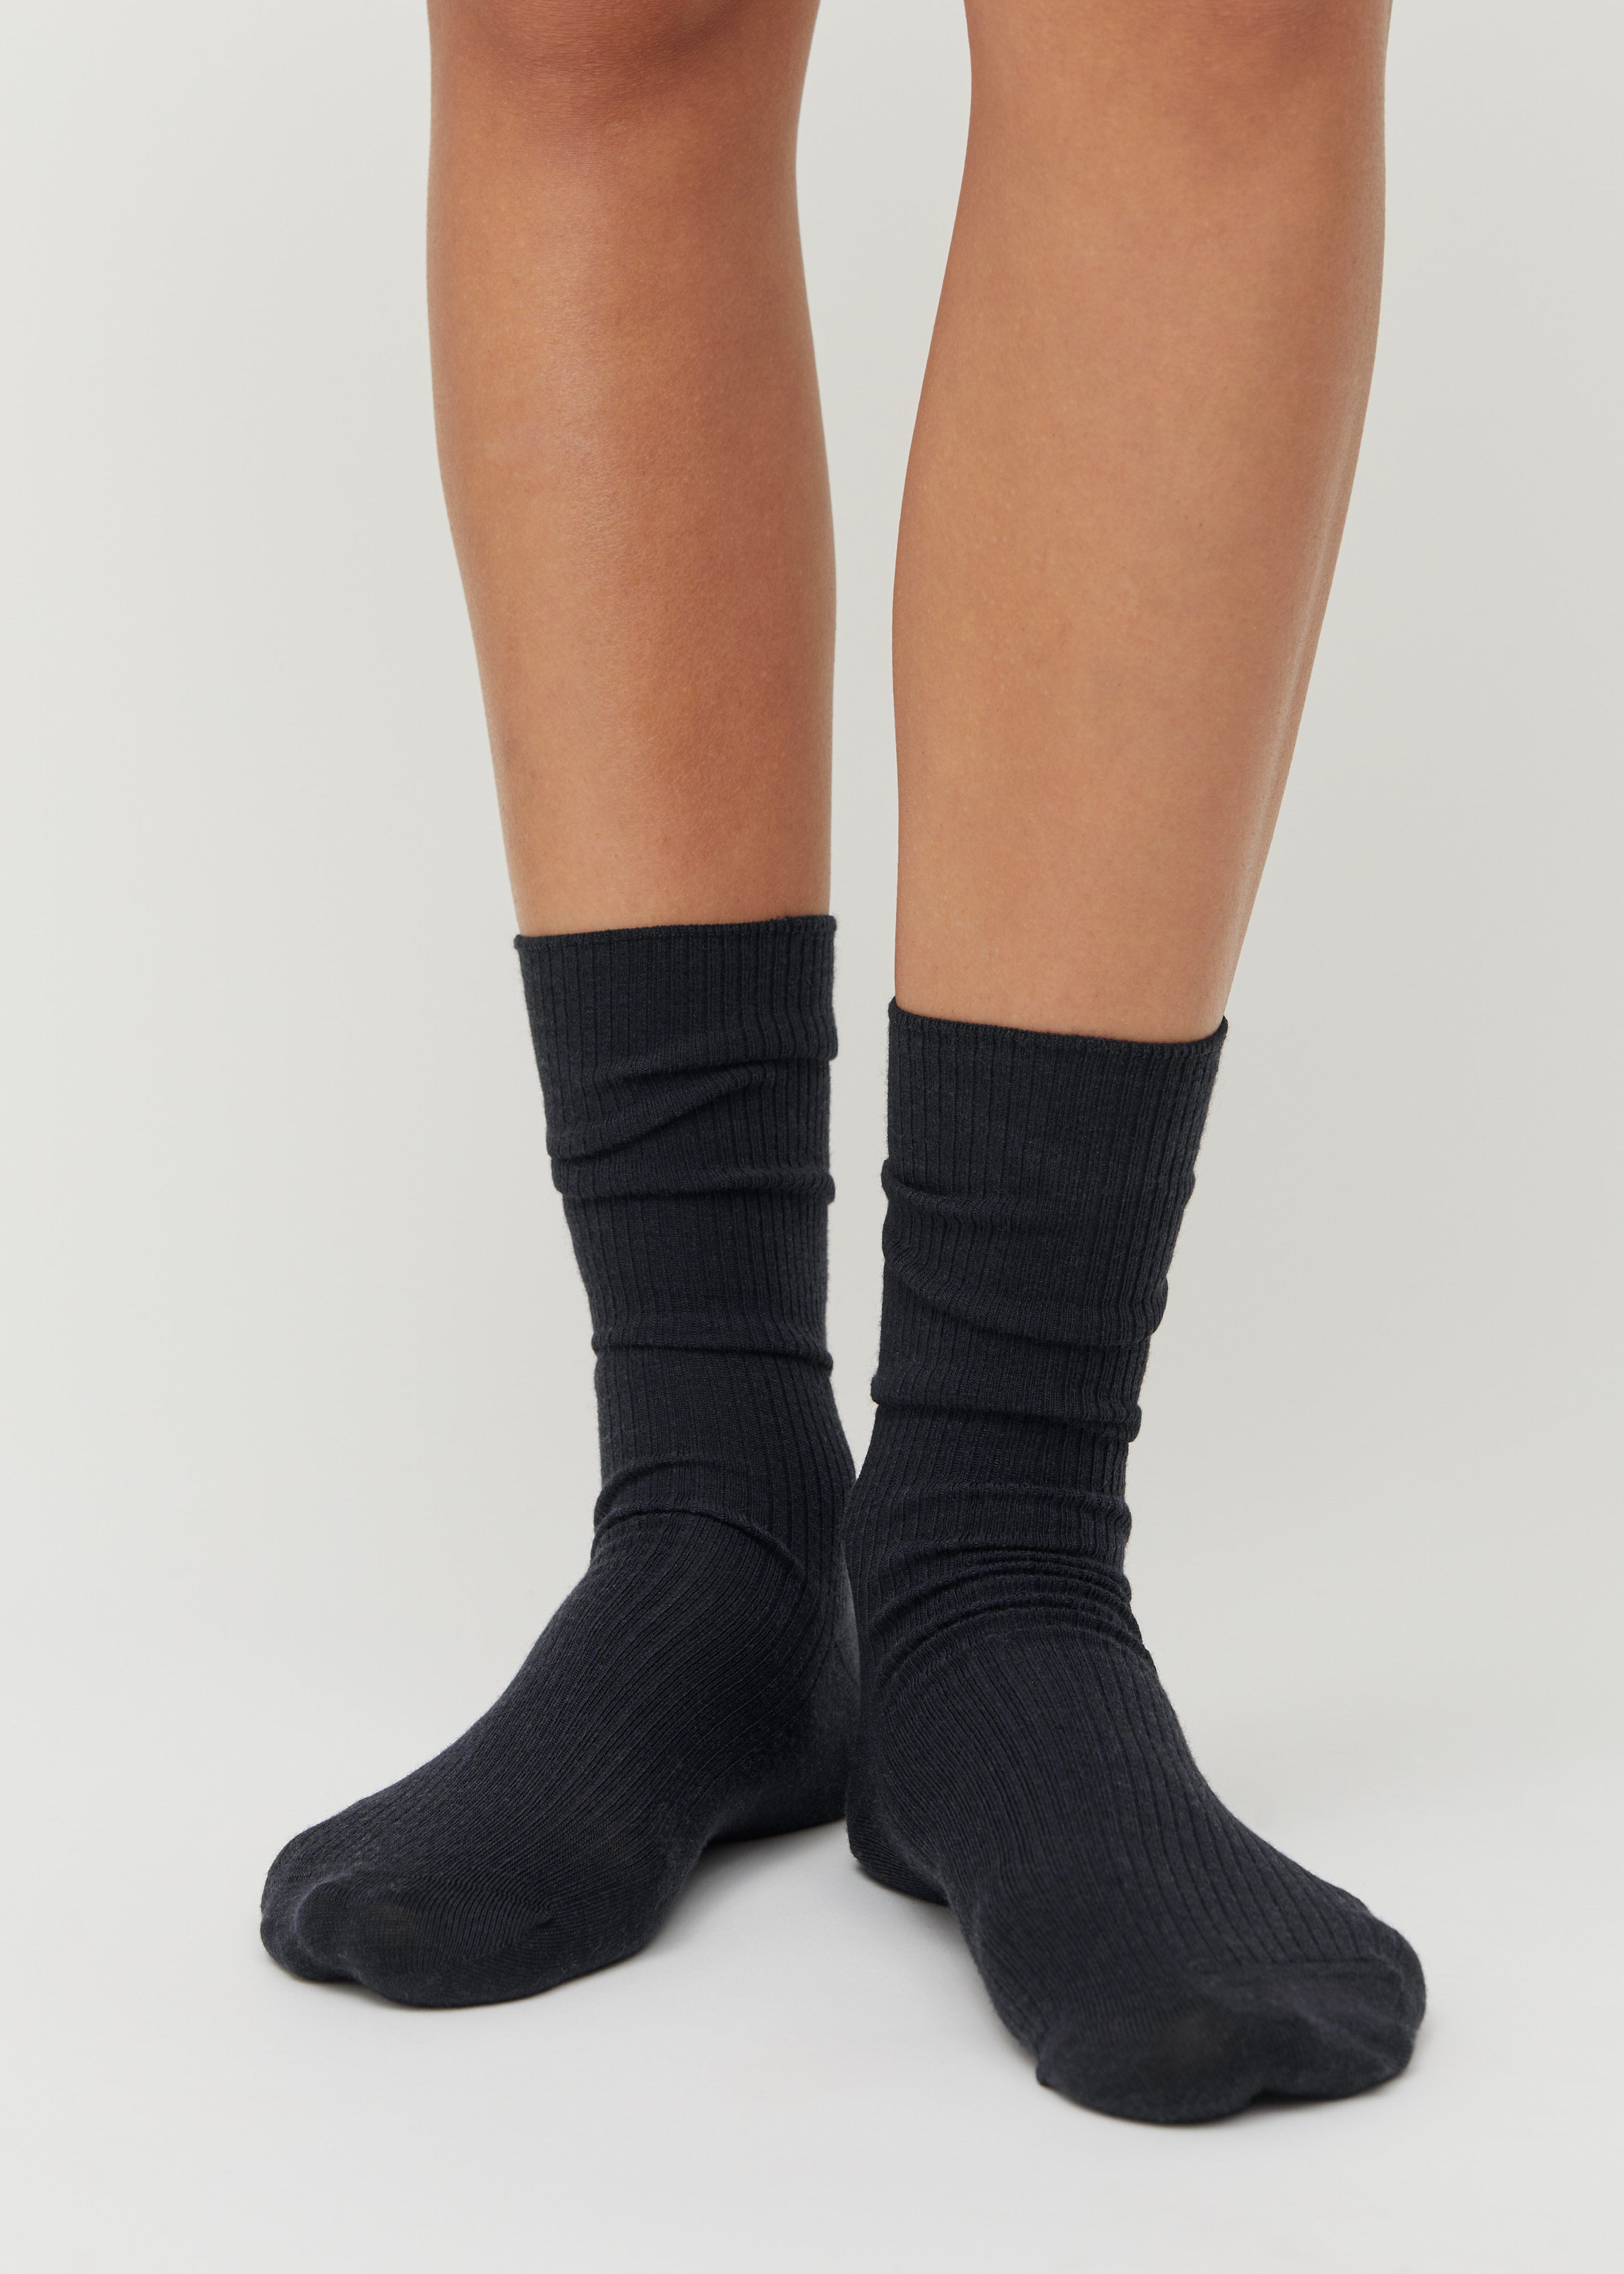 Wool rib socks | Black